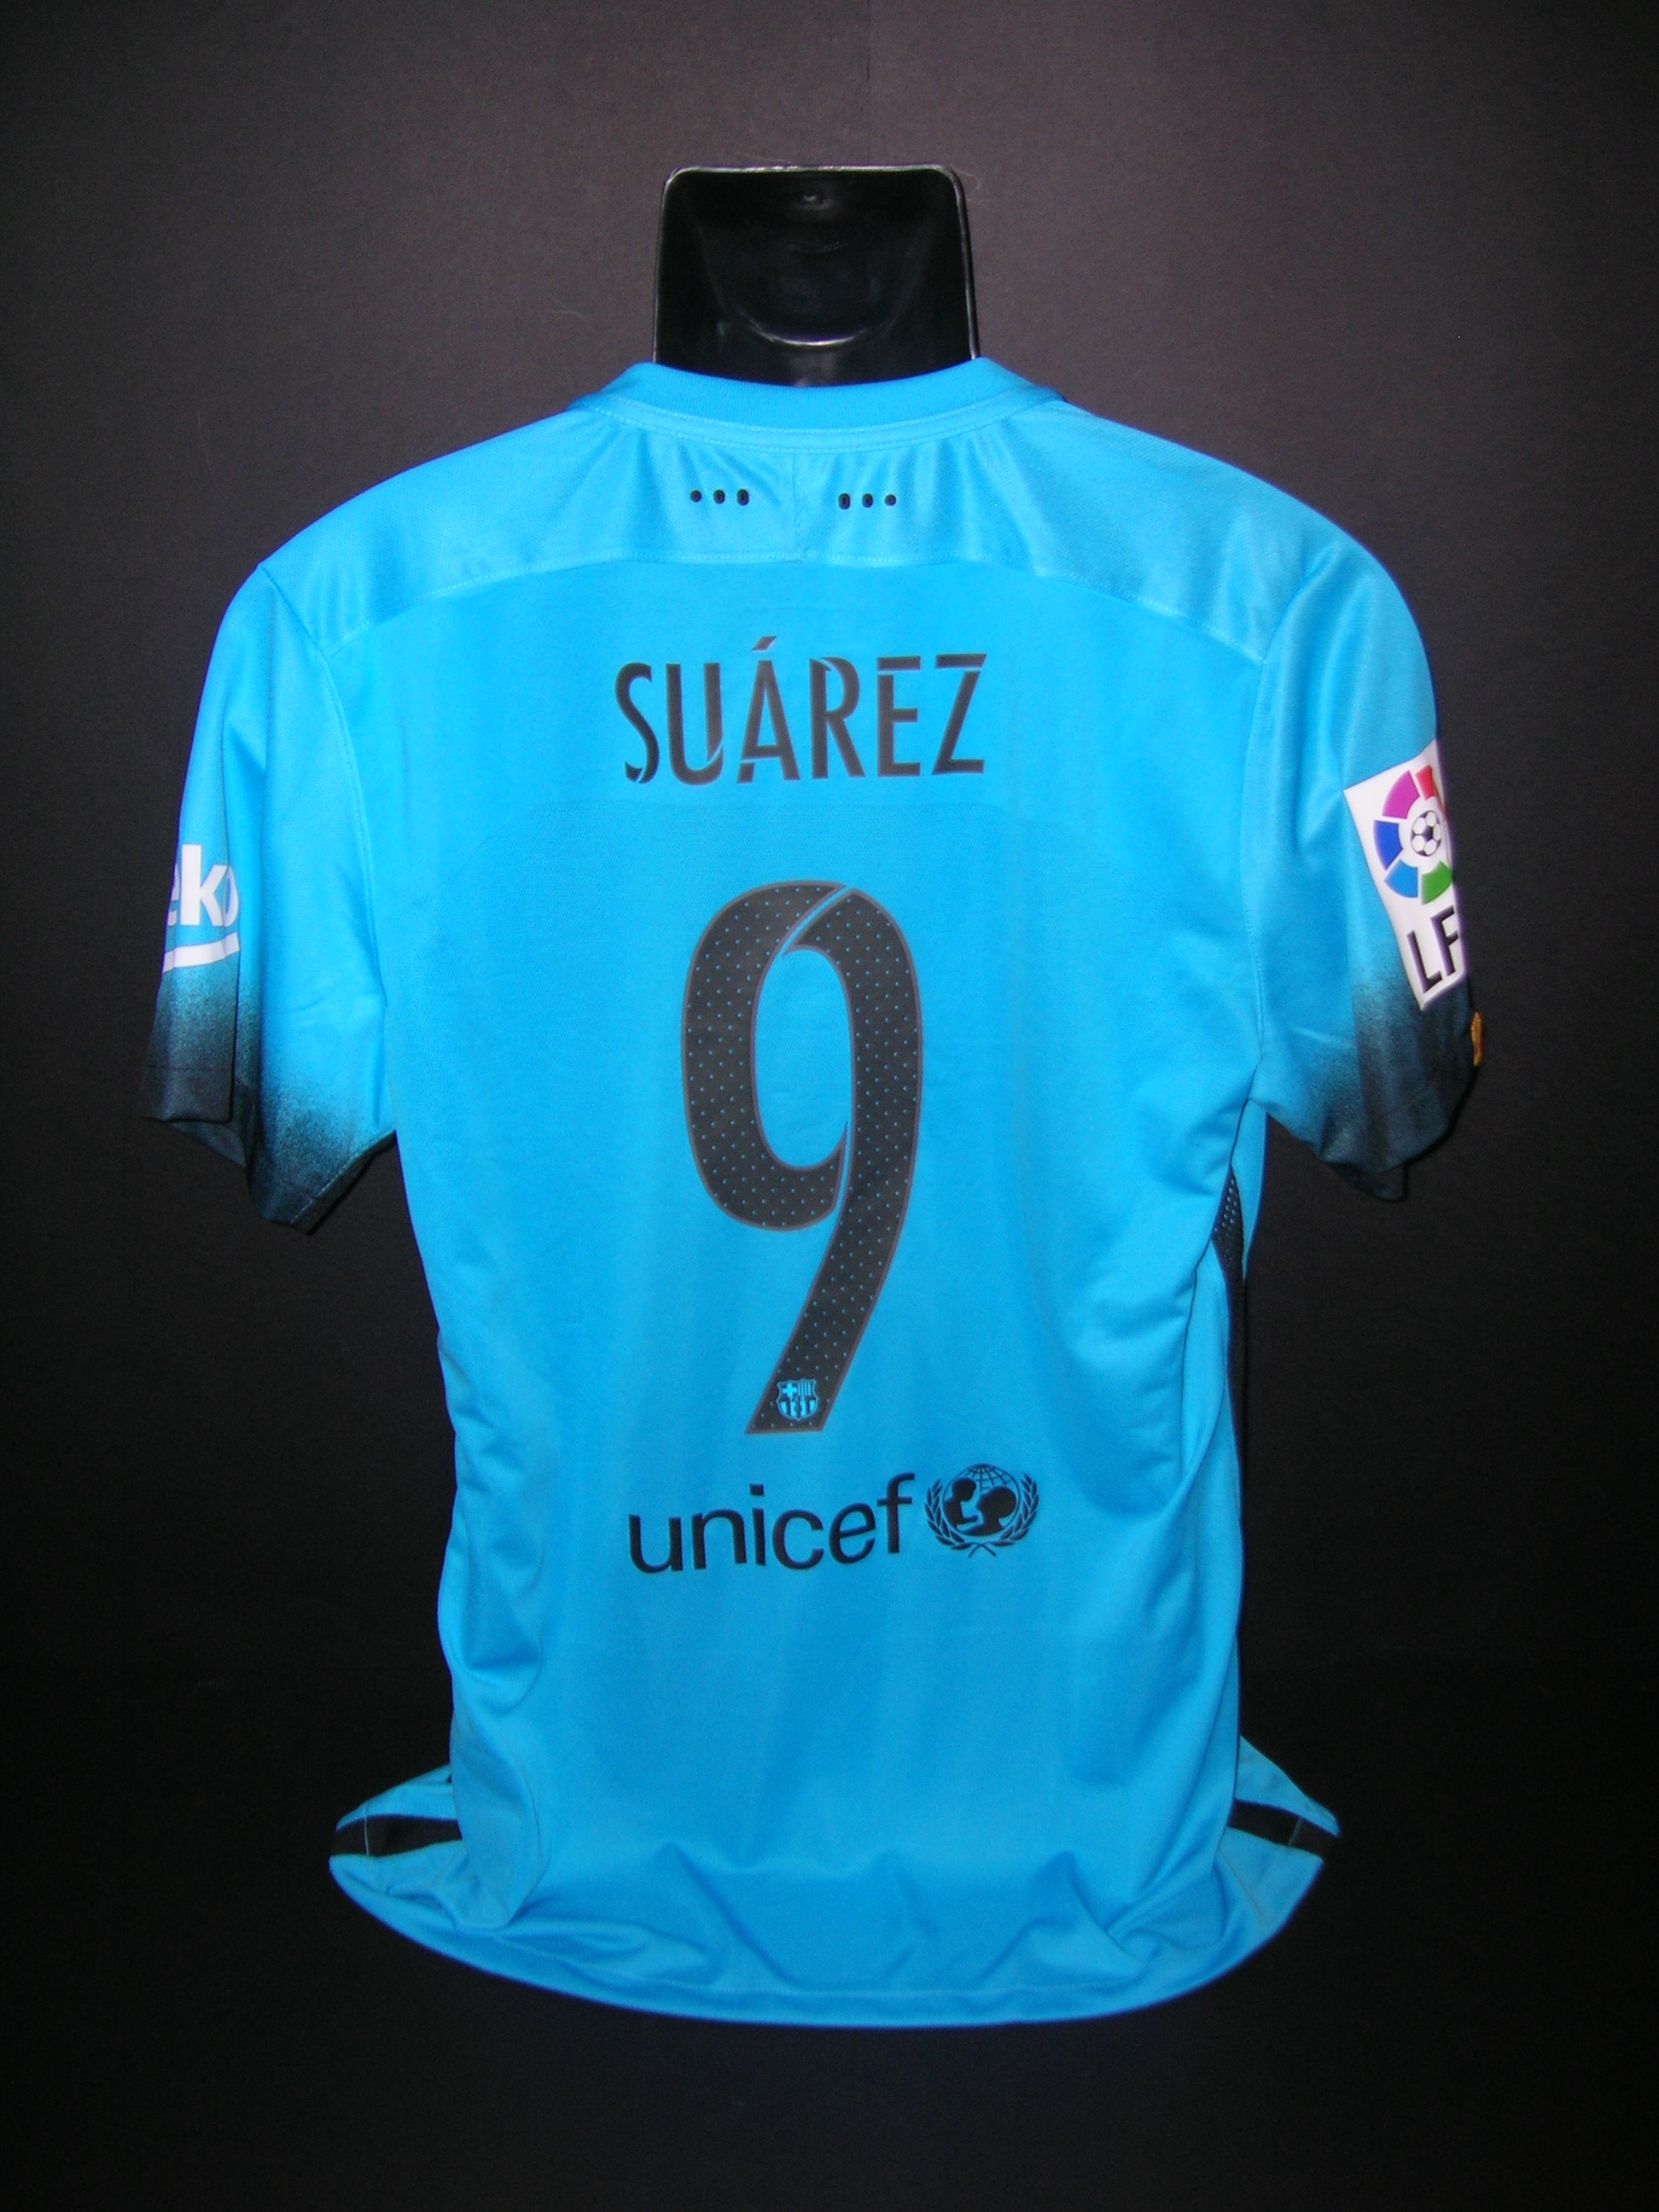 Barcellona  n.9  Suarez  2015  -  450